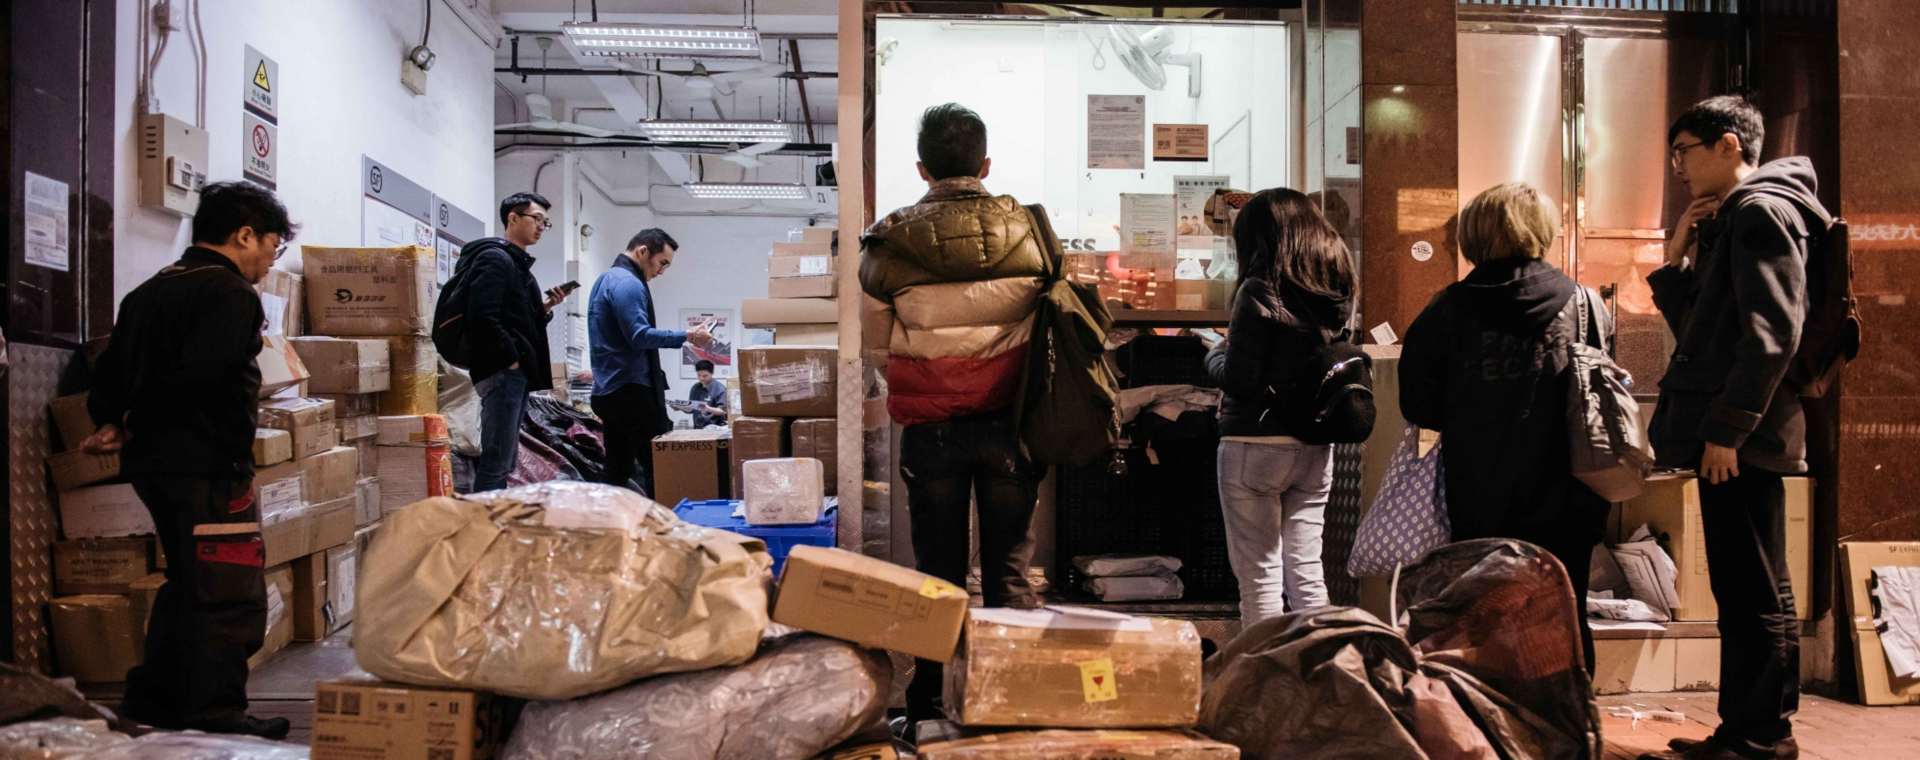 Pelanggan berbaris di salah satu gerai pengiriman logistik di China.  - Bloomberg